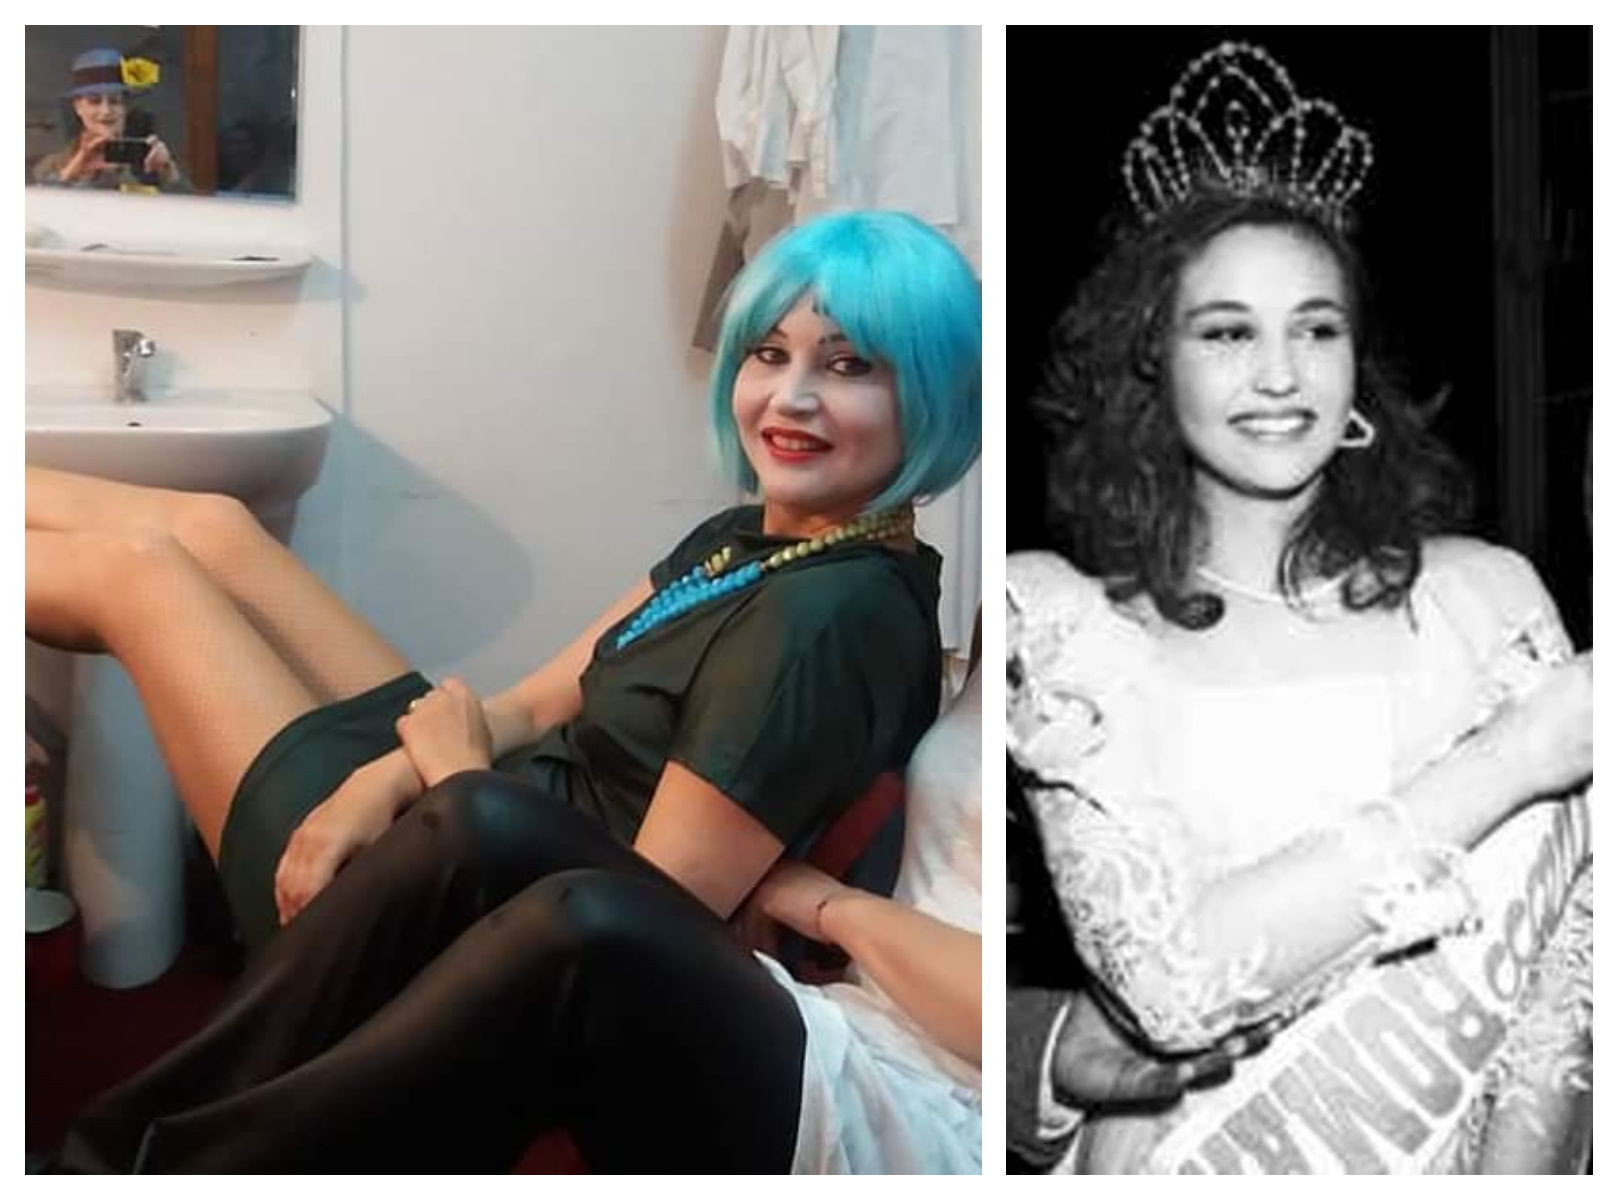 Prima Miss România, actrița Daniela Nane șochează! Frumusețea nu i-a adus roluri și nici nu a îmbogățit-o: ”Faptul că arăţi într-un fel nu te scuteşte de întâmplări nefericite”